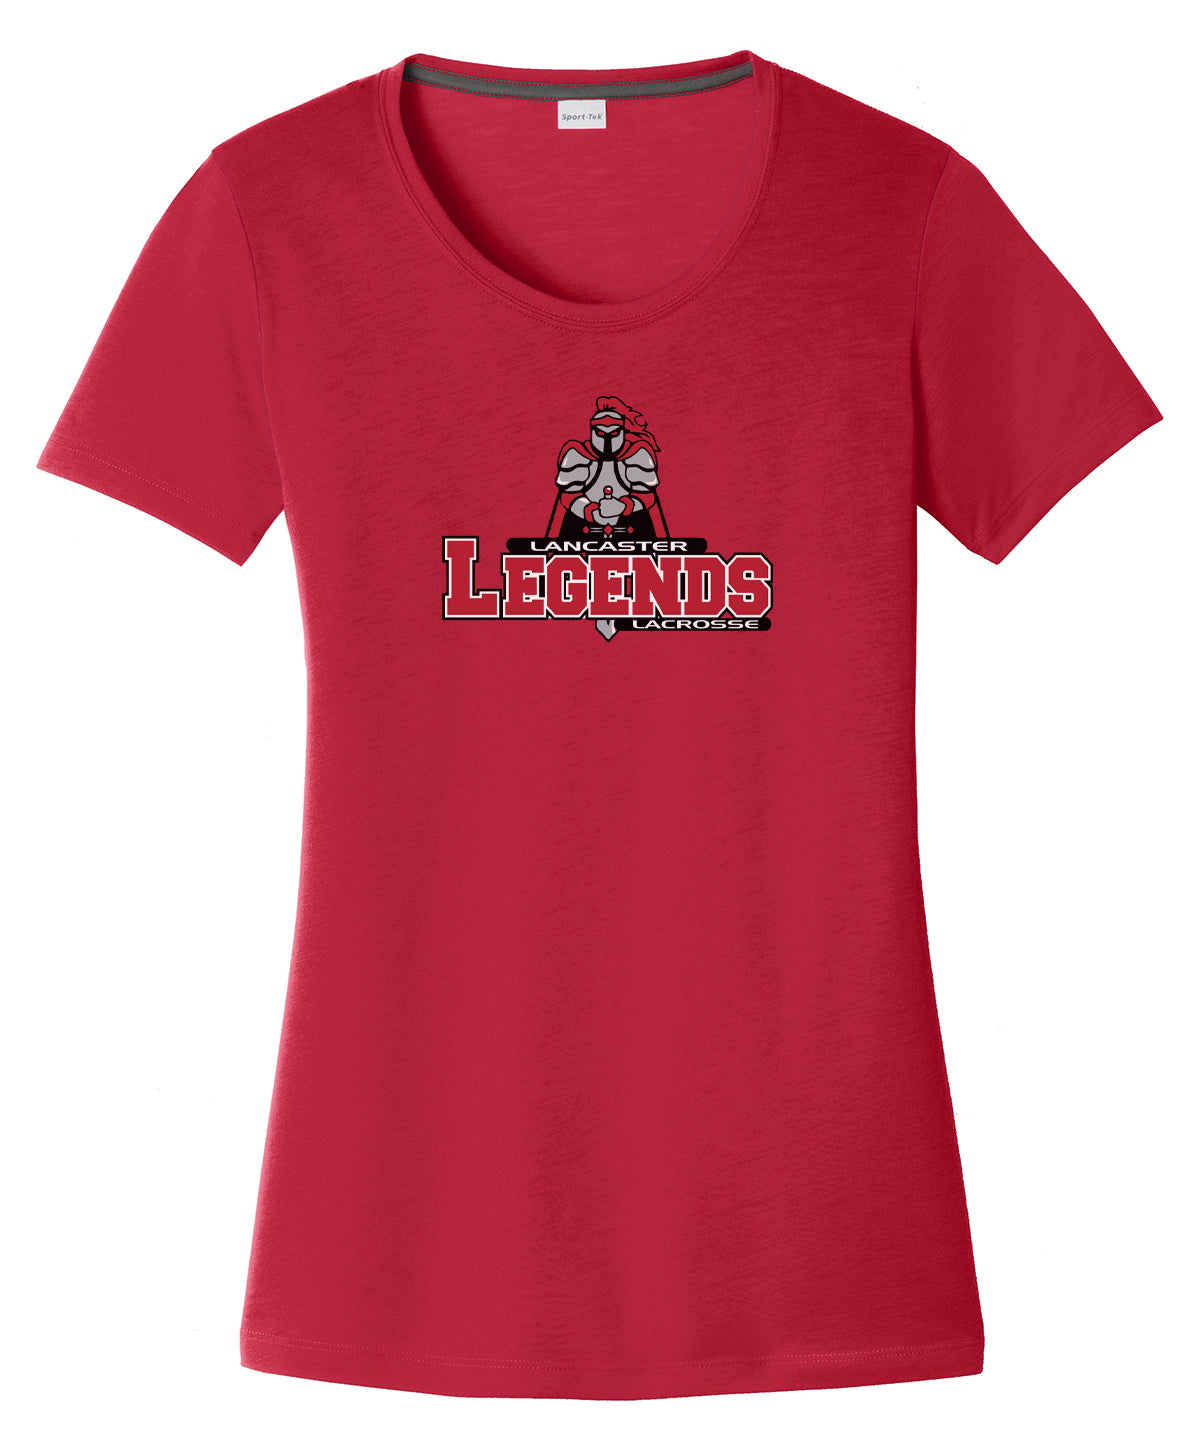 Lancaster Legends Lacrosse Red Women's CottonTouch Performance T-Shirt